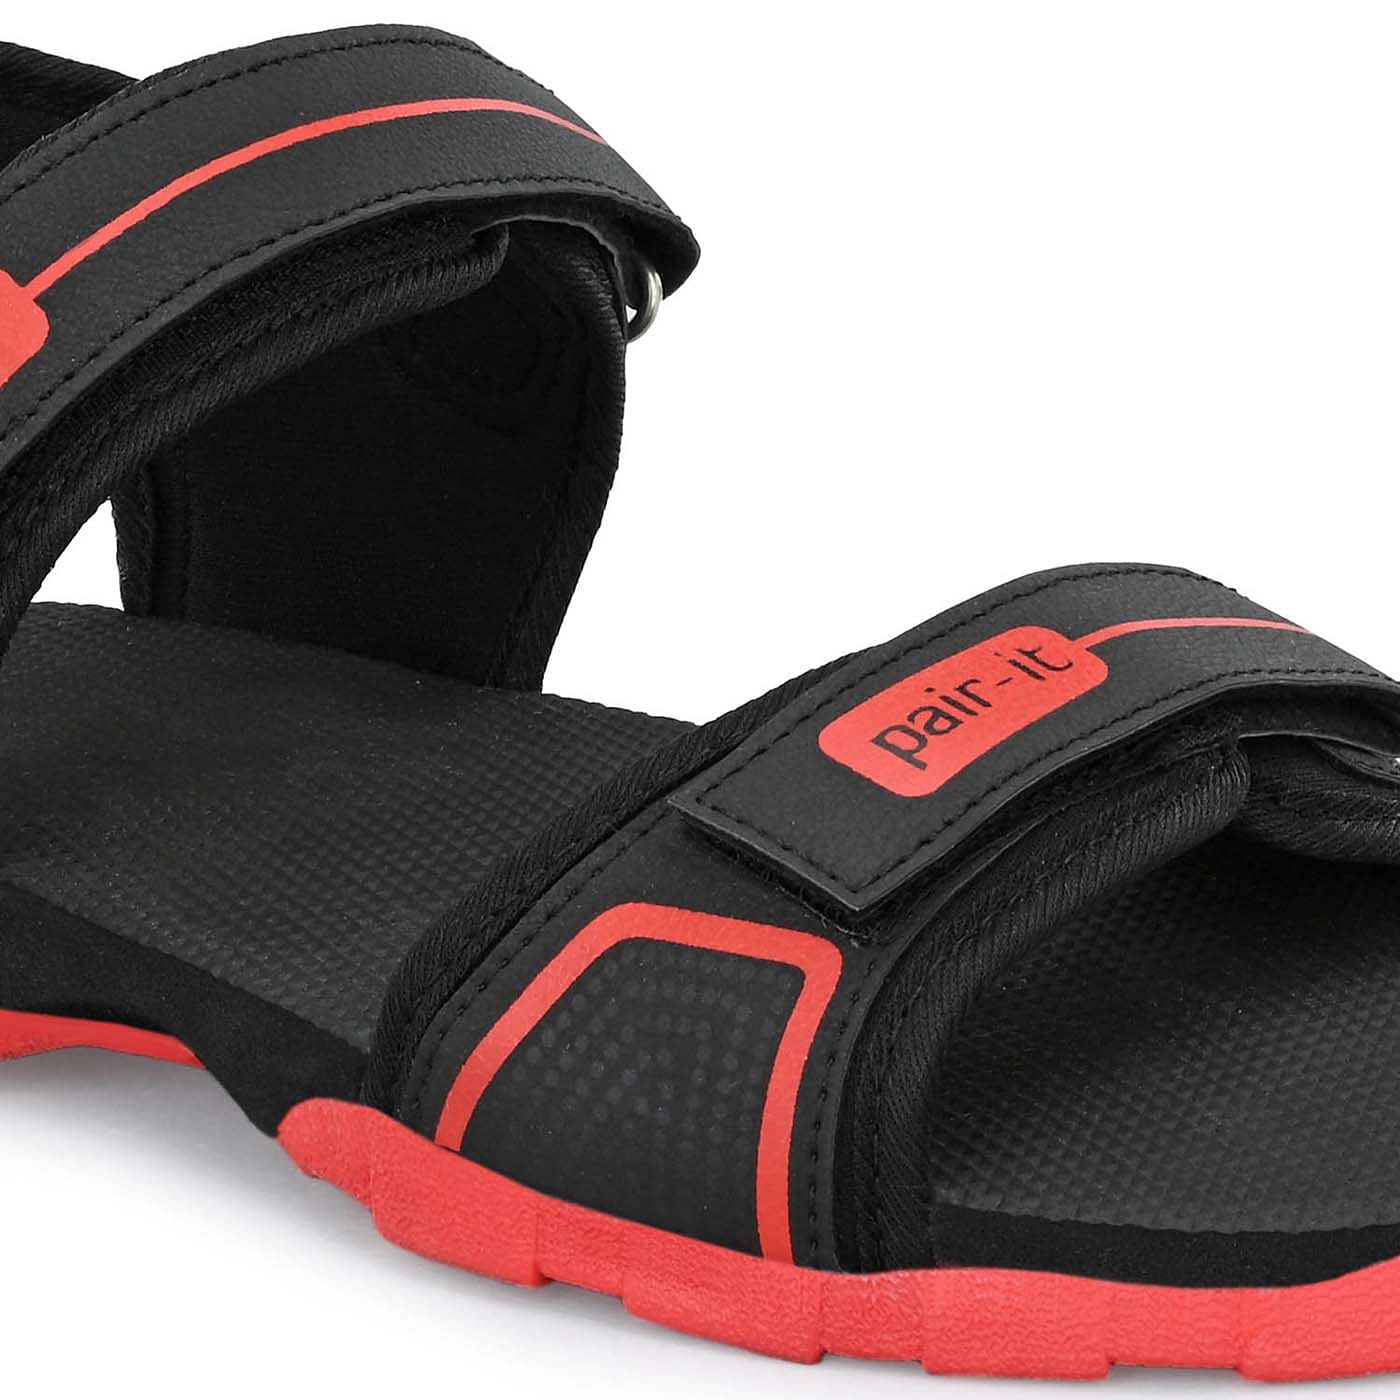 Pair-it Mn Sandals - Black/Red-UN-Mn-Sp-Sandal002